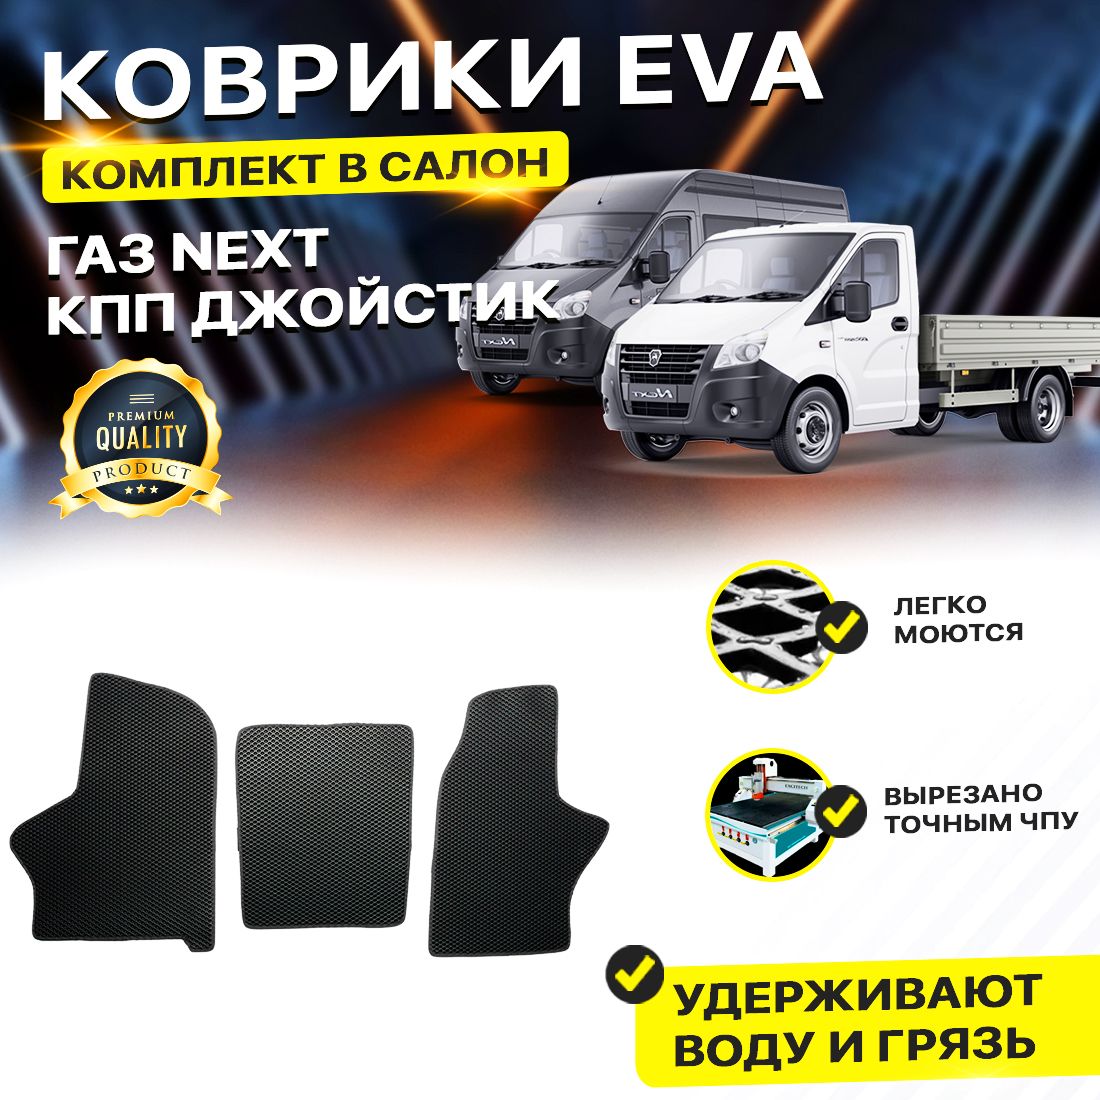 Комплект ковриков DreamCar Technology ГАЗ ГАЗель Next КПП Джостик ромбKчерный